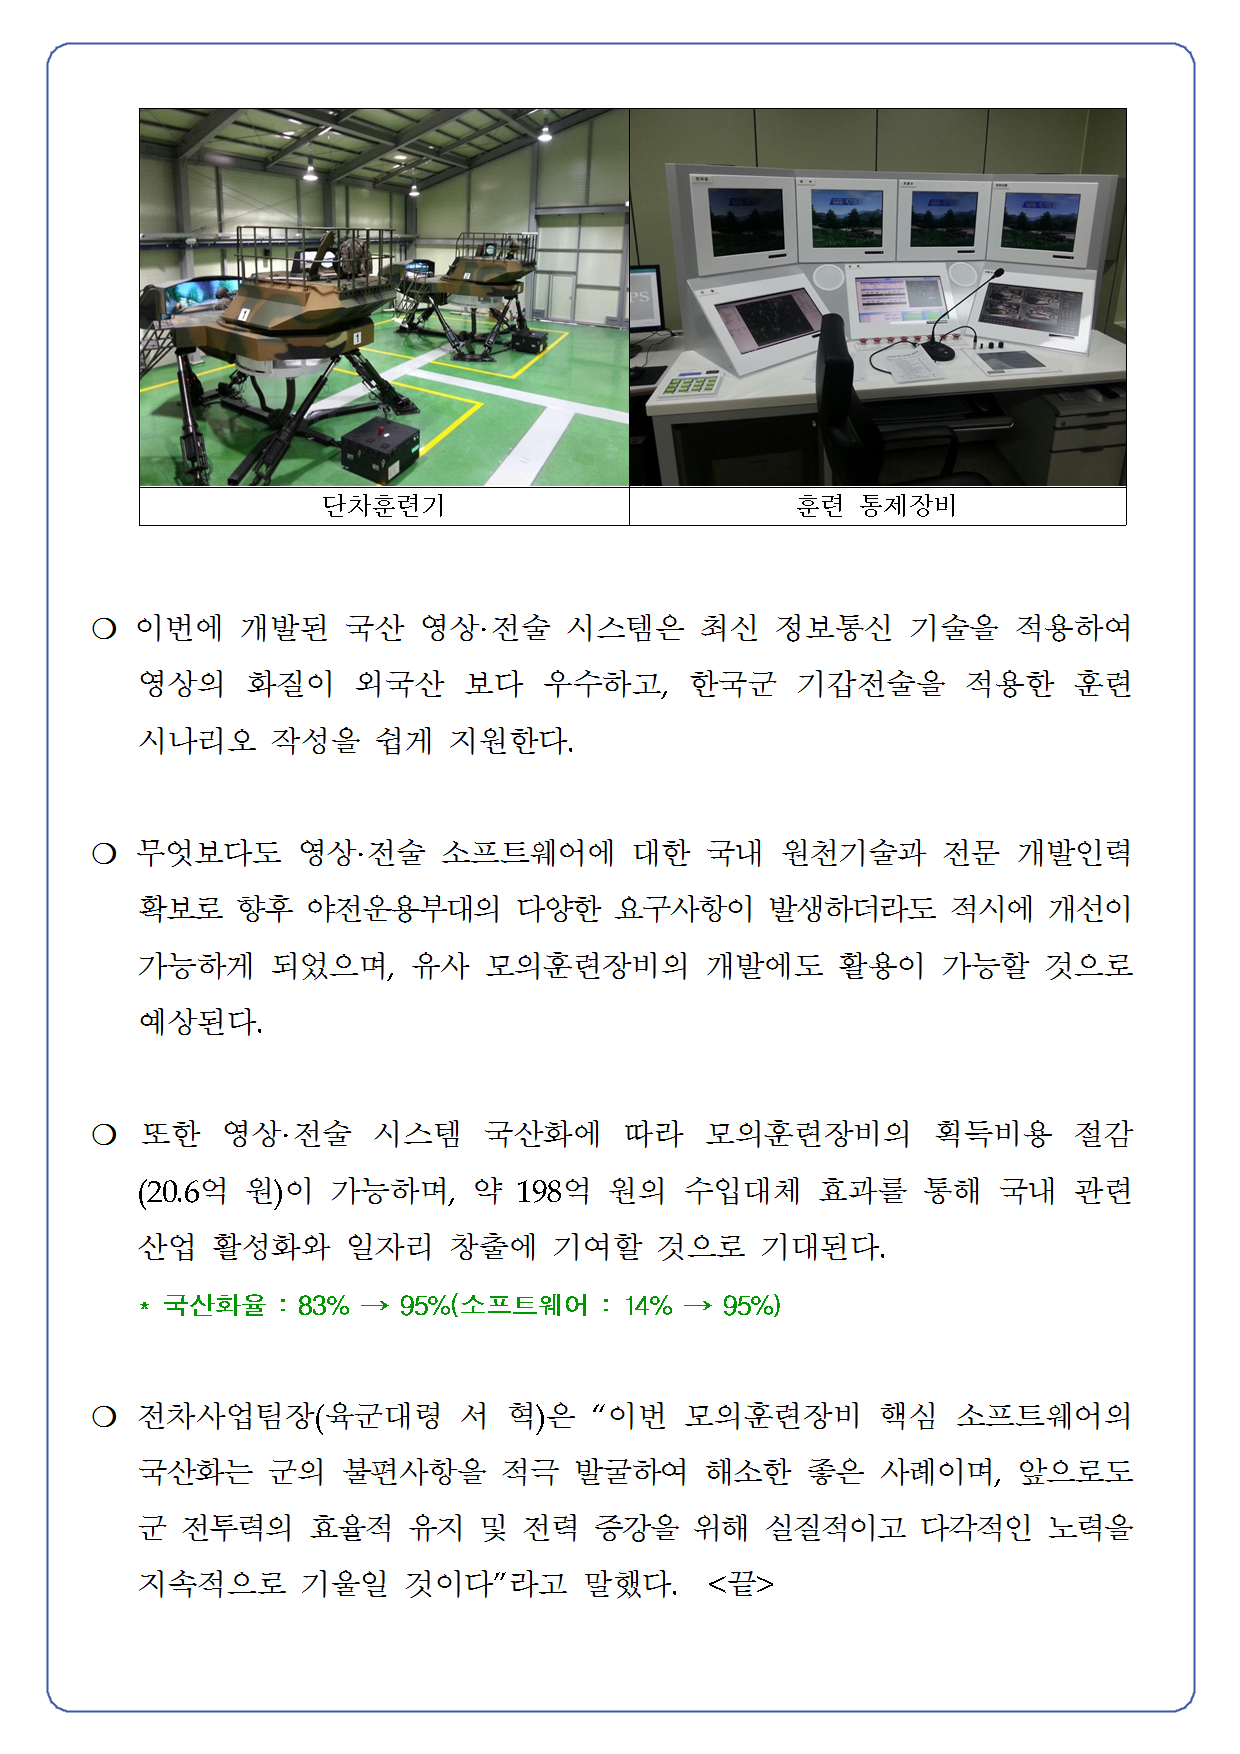 20150113-K계열전차 소부대전술 모의훈련장비 국산화002.png